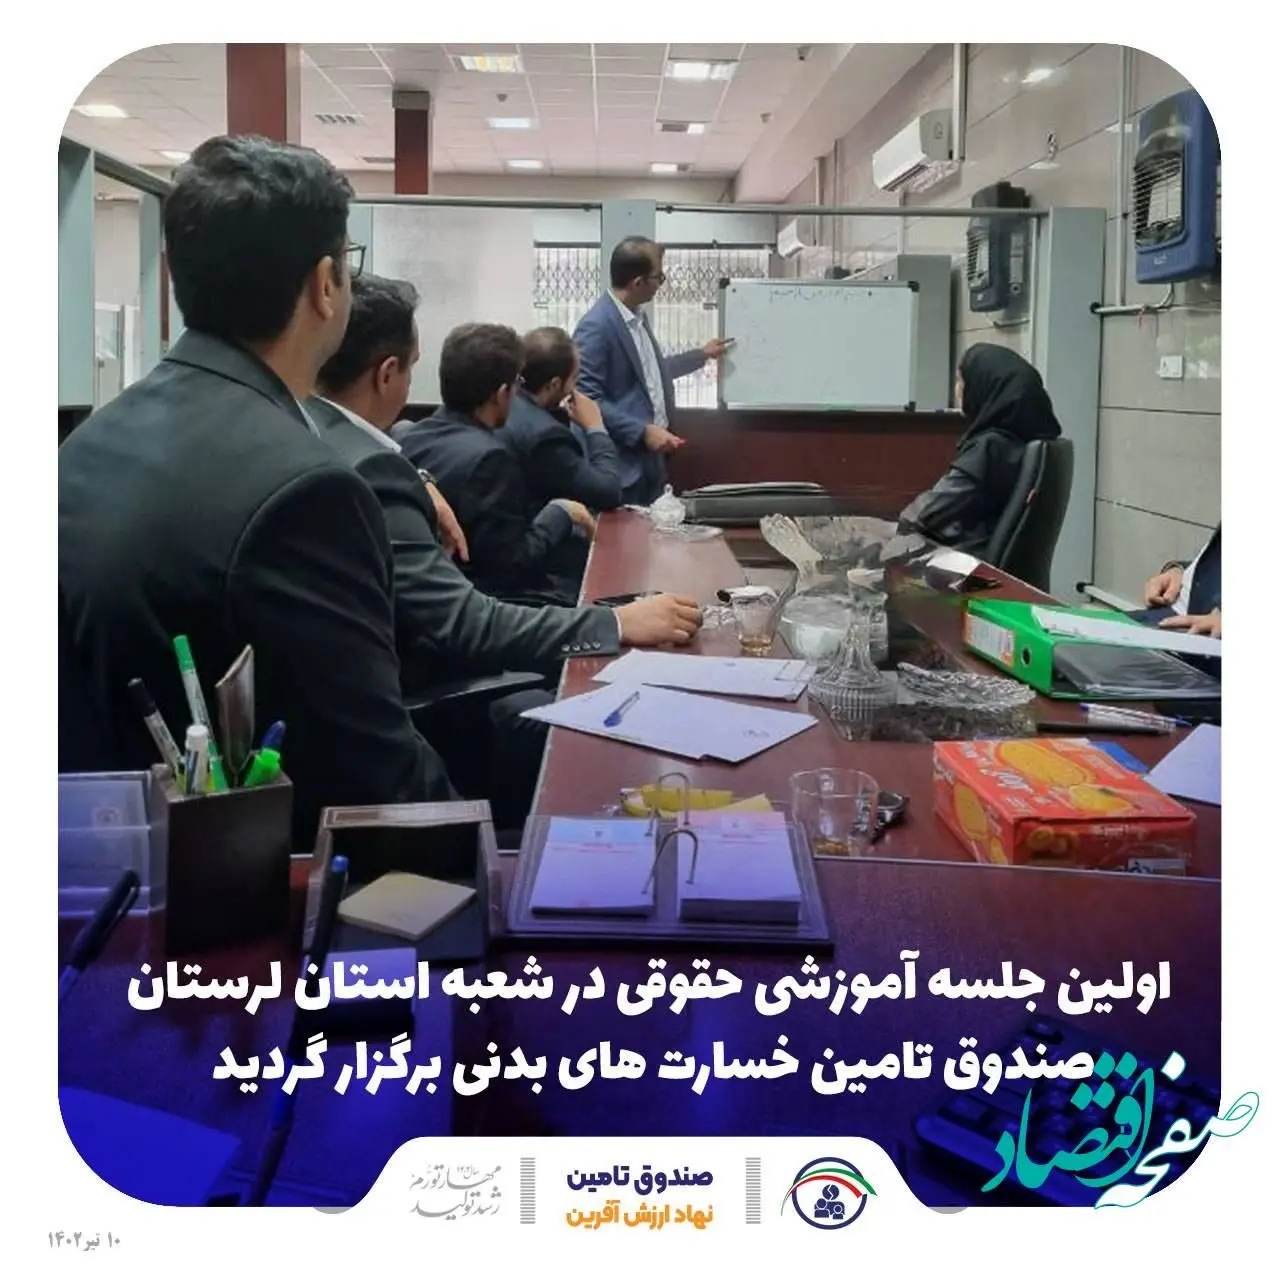 اولین جلسه آموزشی حقوقی در شعبه استان لرستان صندوق تامین خسارت های بدنی برگزار گردید